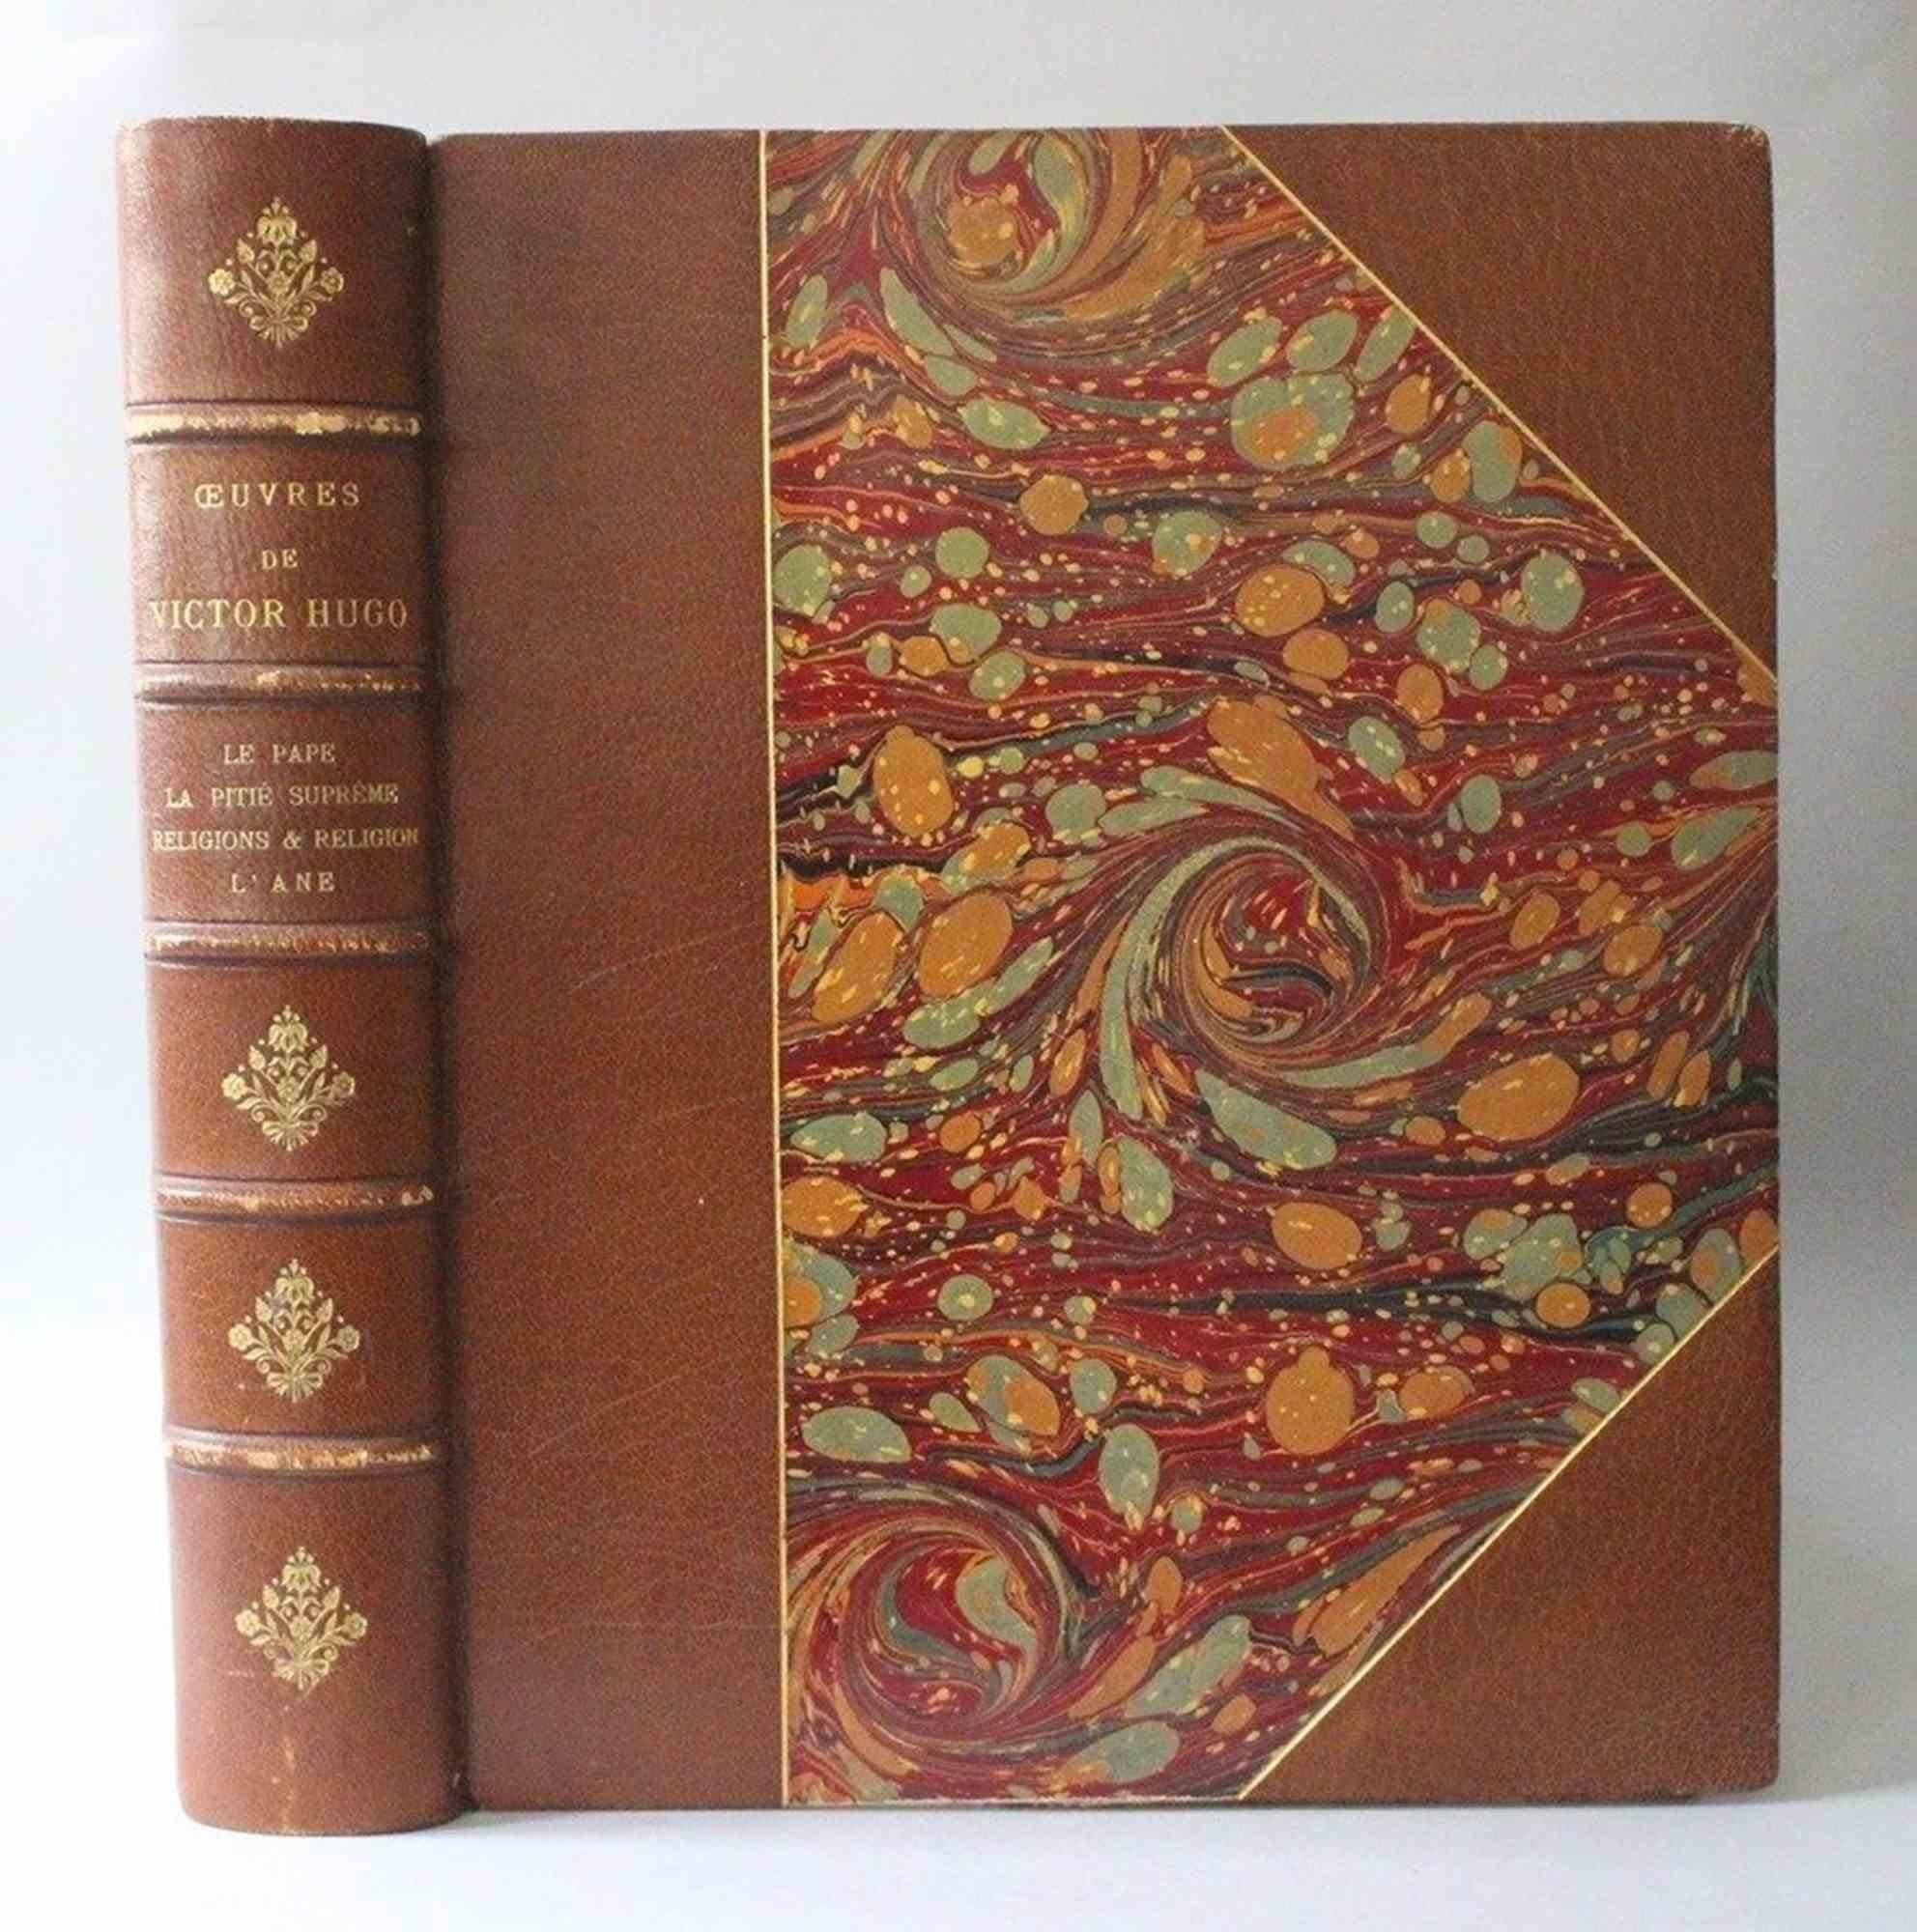 Le Pape / La pitié suprême / Religions et... - Rare Book by Victor Hugo - 1888 For Sale 2